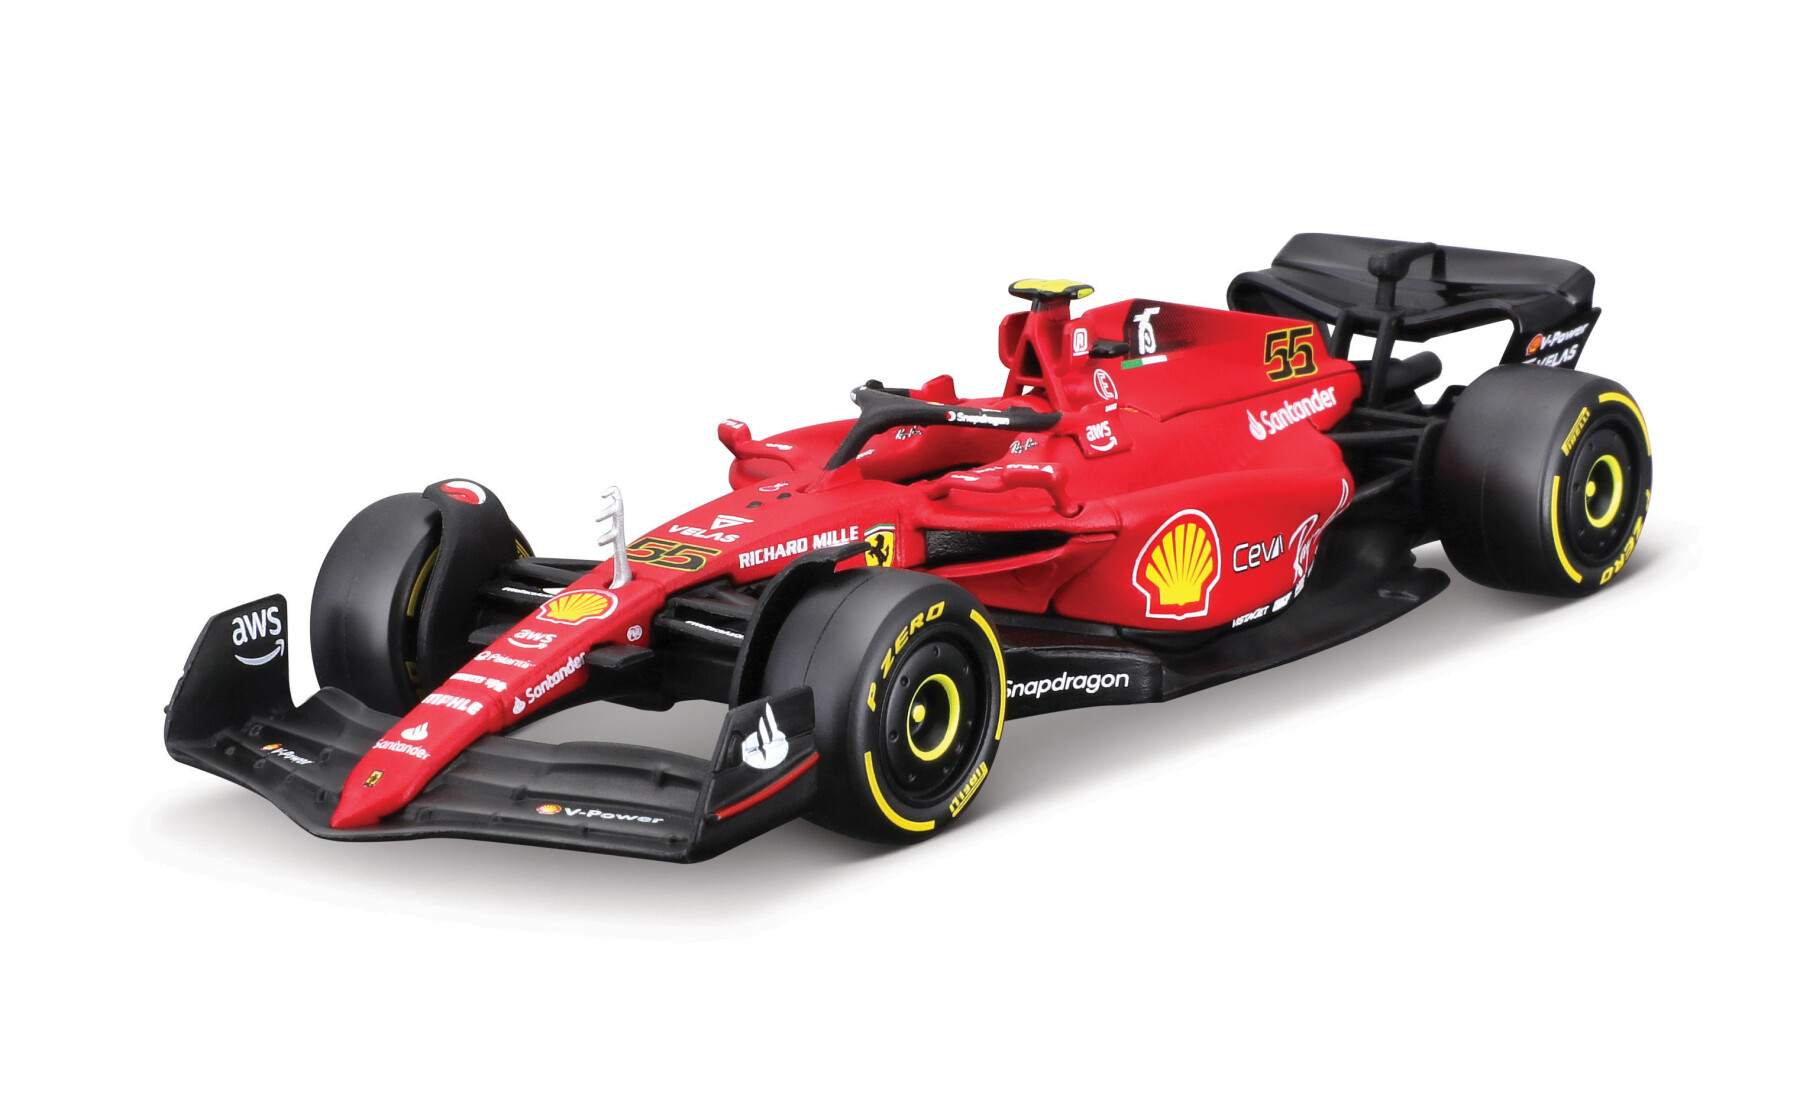 Ferrari f1-75 #55 sainz -1:43 - BBURAGO